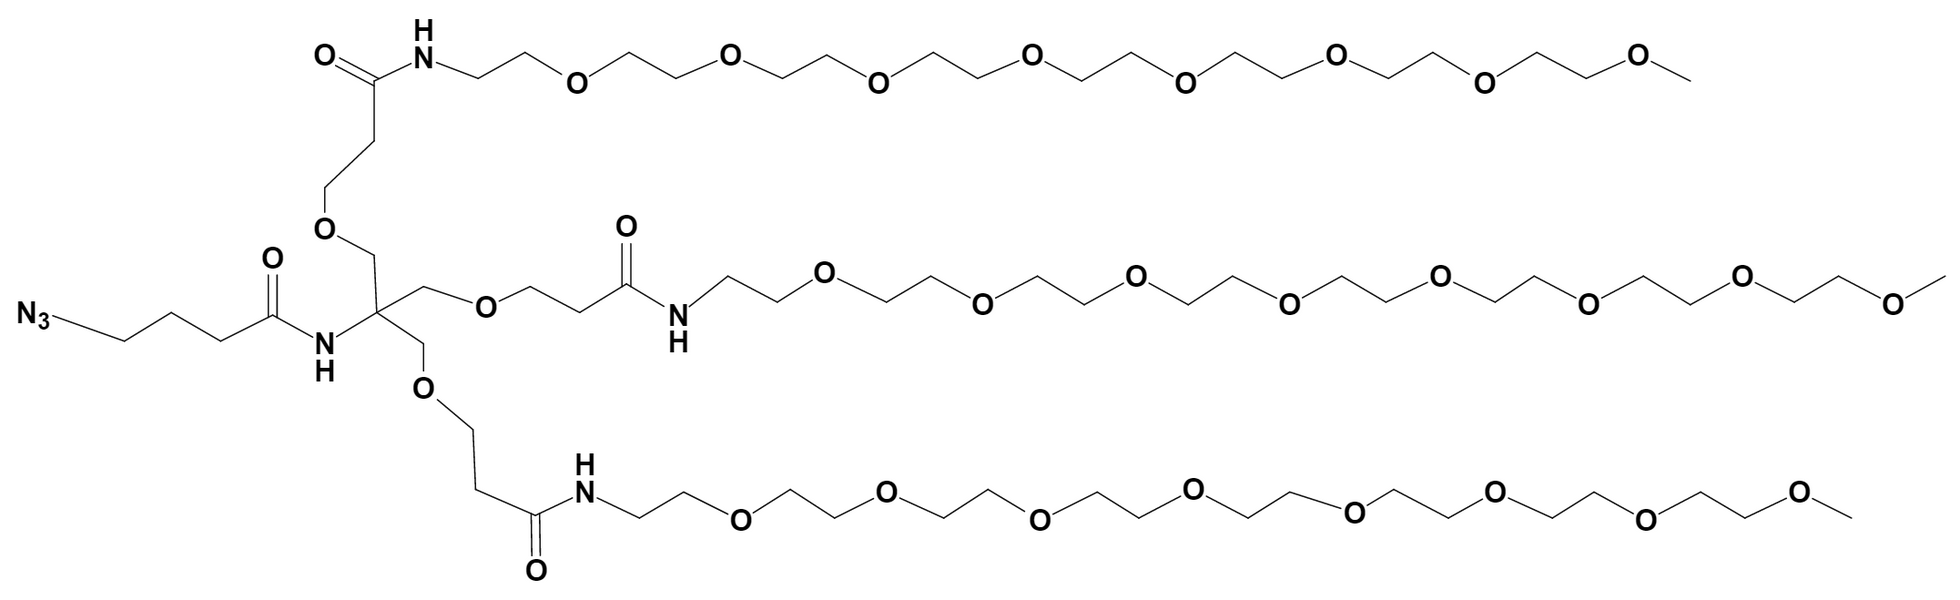 Azidobutanamide-Tri-(m-PEG8-ethoxymethyl)-methane